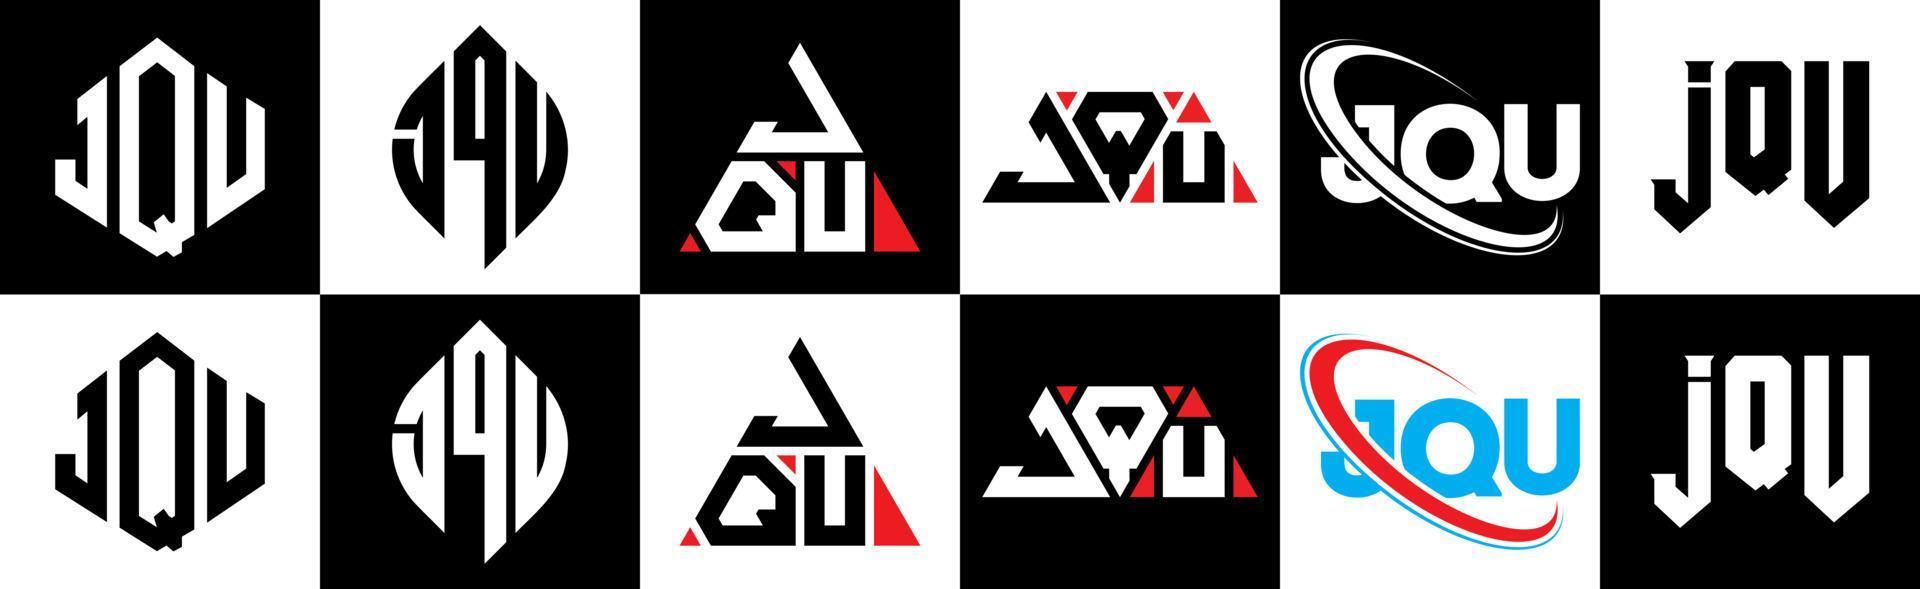 création de logo de lettre jqu en six styles. jqu polygone, cercle, triangle, hexagone, style plat et simple avec logo de lettre de variation de couleur noir et blanc dans un plan de travail. jqu logo minimaliste et classique vecteur